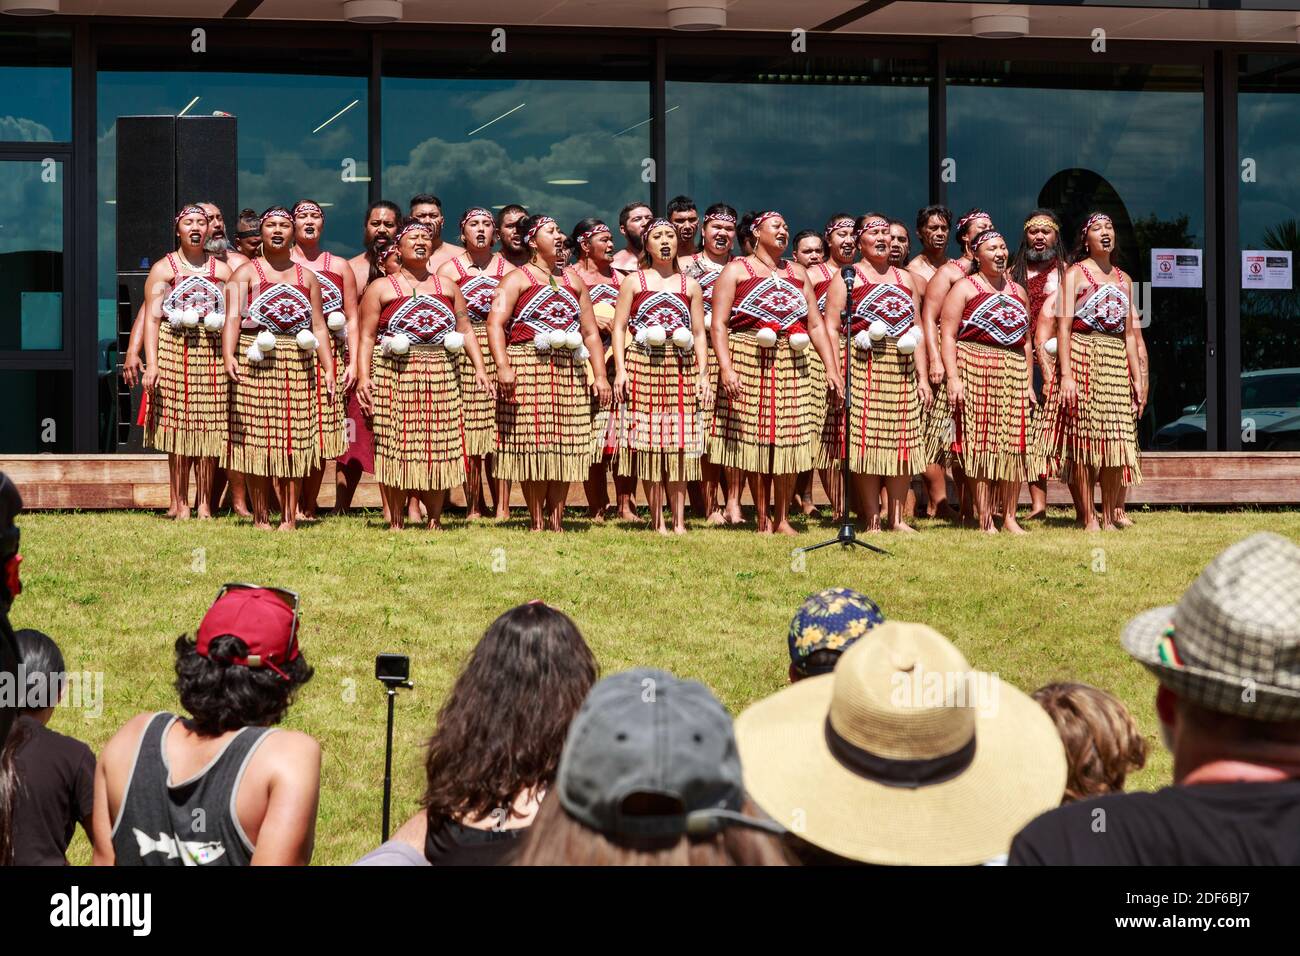 Un groupe de kapa haka maori (danse traditionnelle) les interprètes chantent devant une foule Banque D'Images